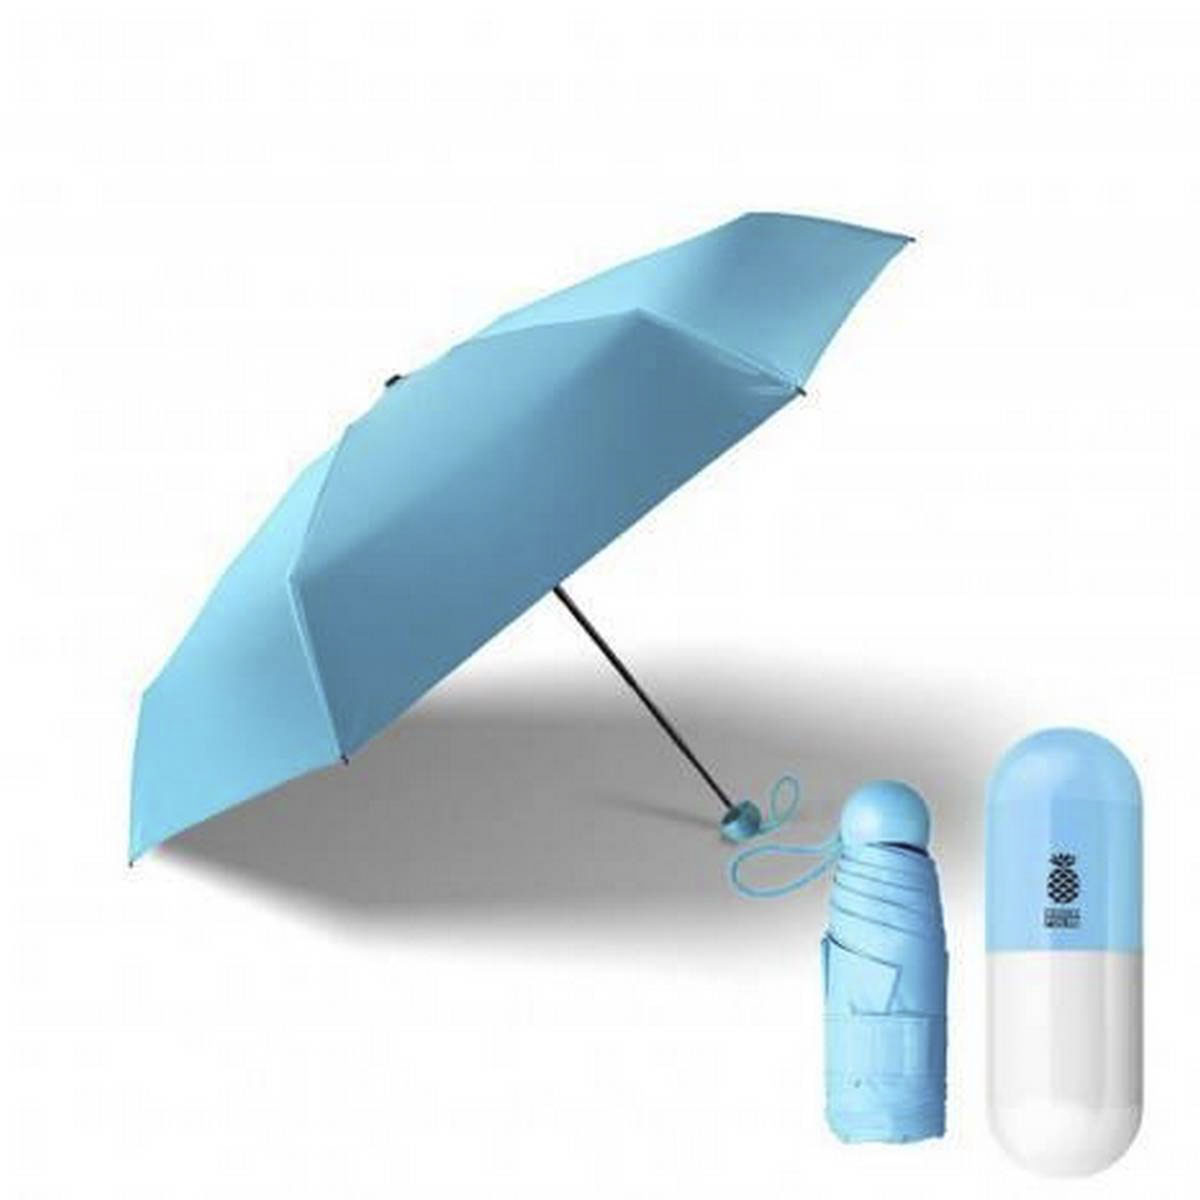 Capsule Umbrella 7" Mini Folding Capsule Umbrella With Cute Capsule Case